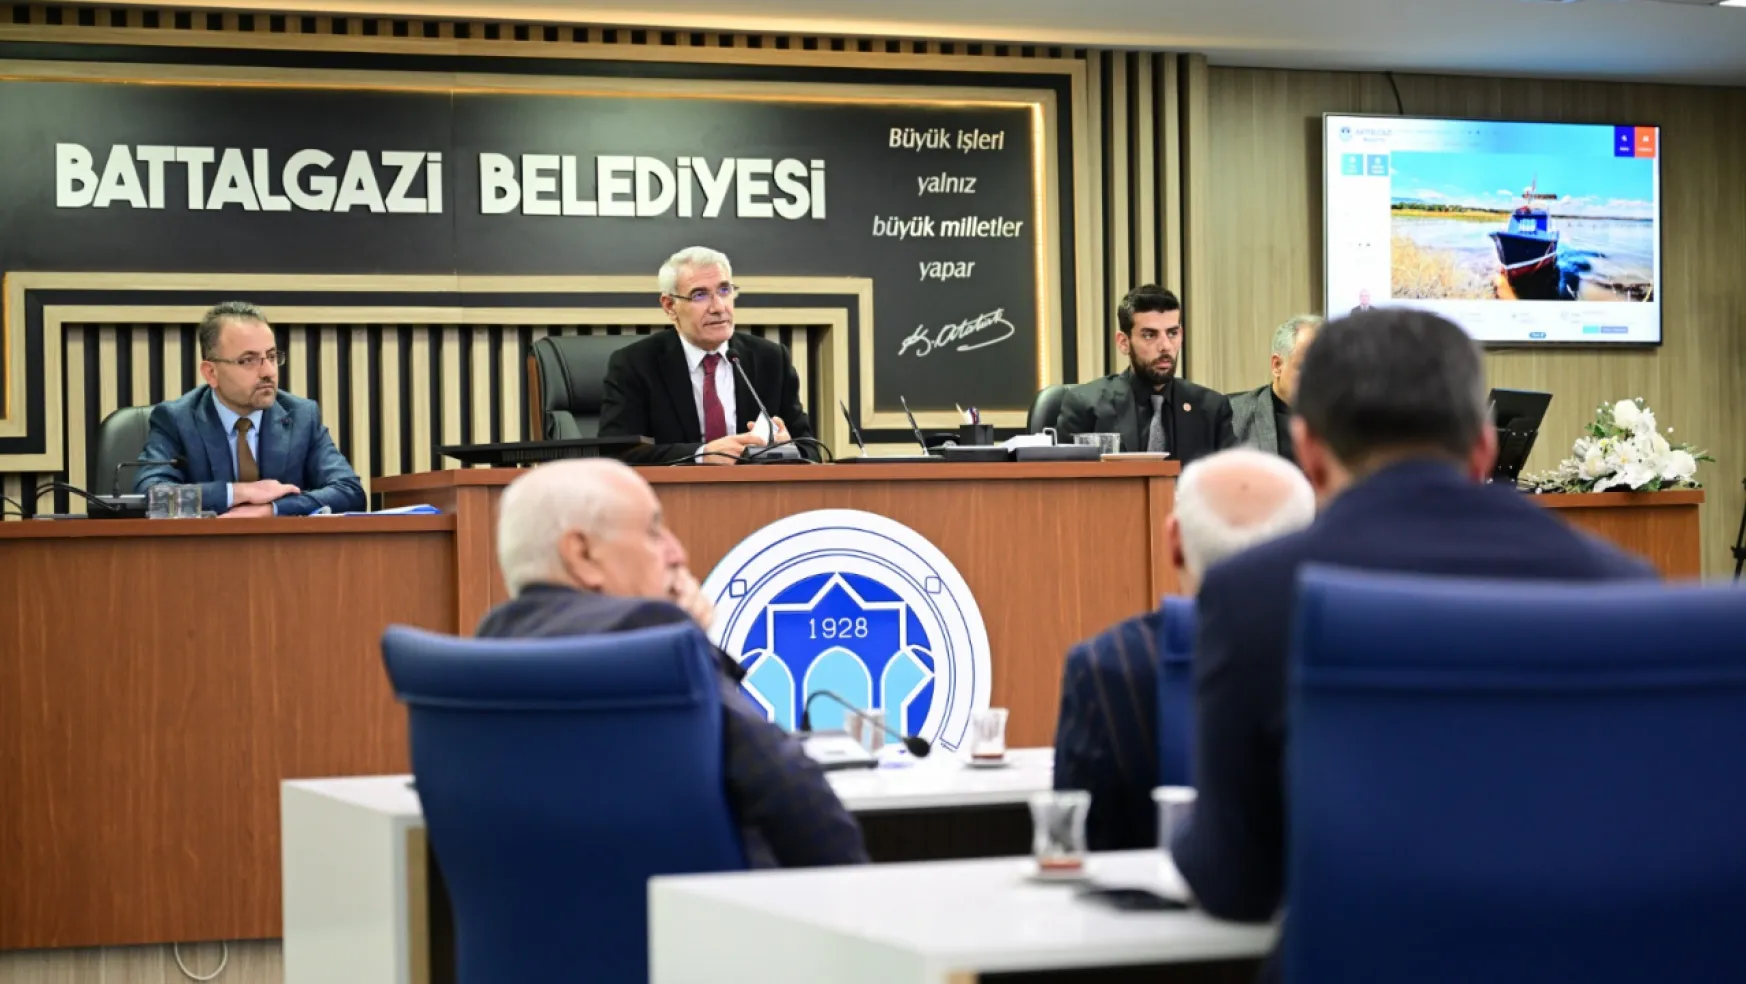 Battalgazi Belediye Meclisi, Şubat Ayı Birinci Birleşimini Gerçekleştirdi